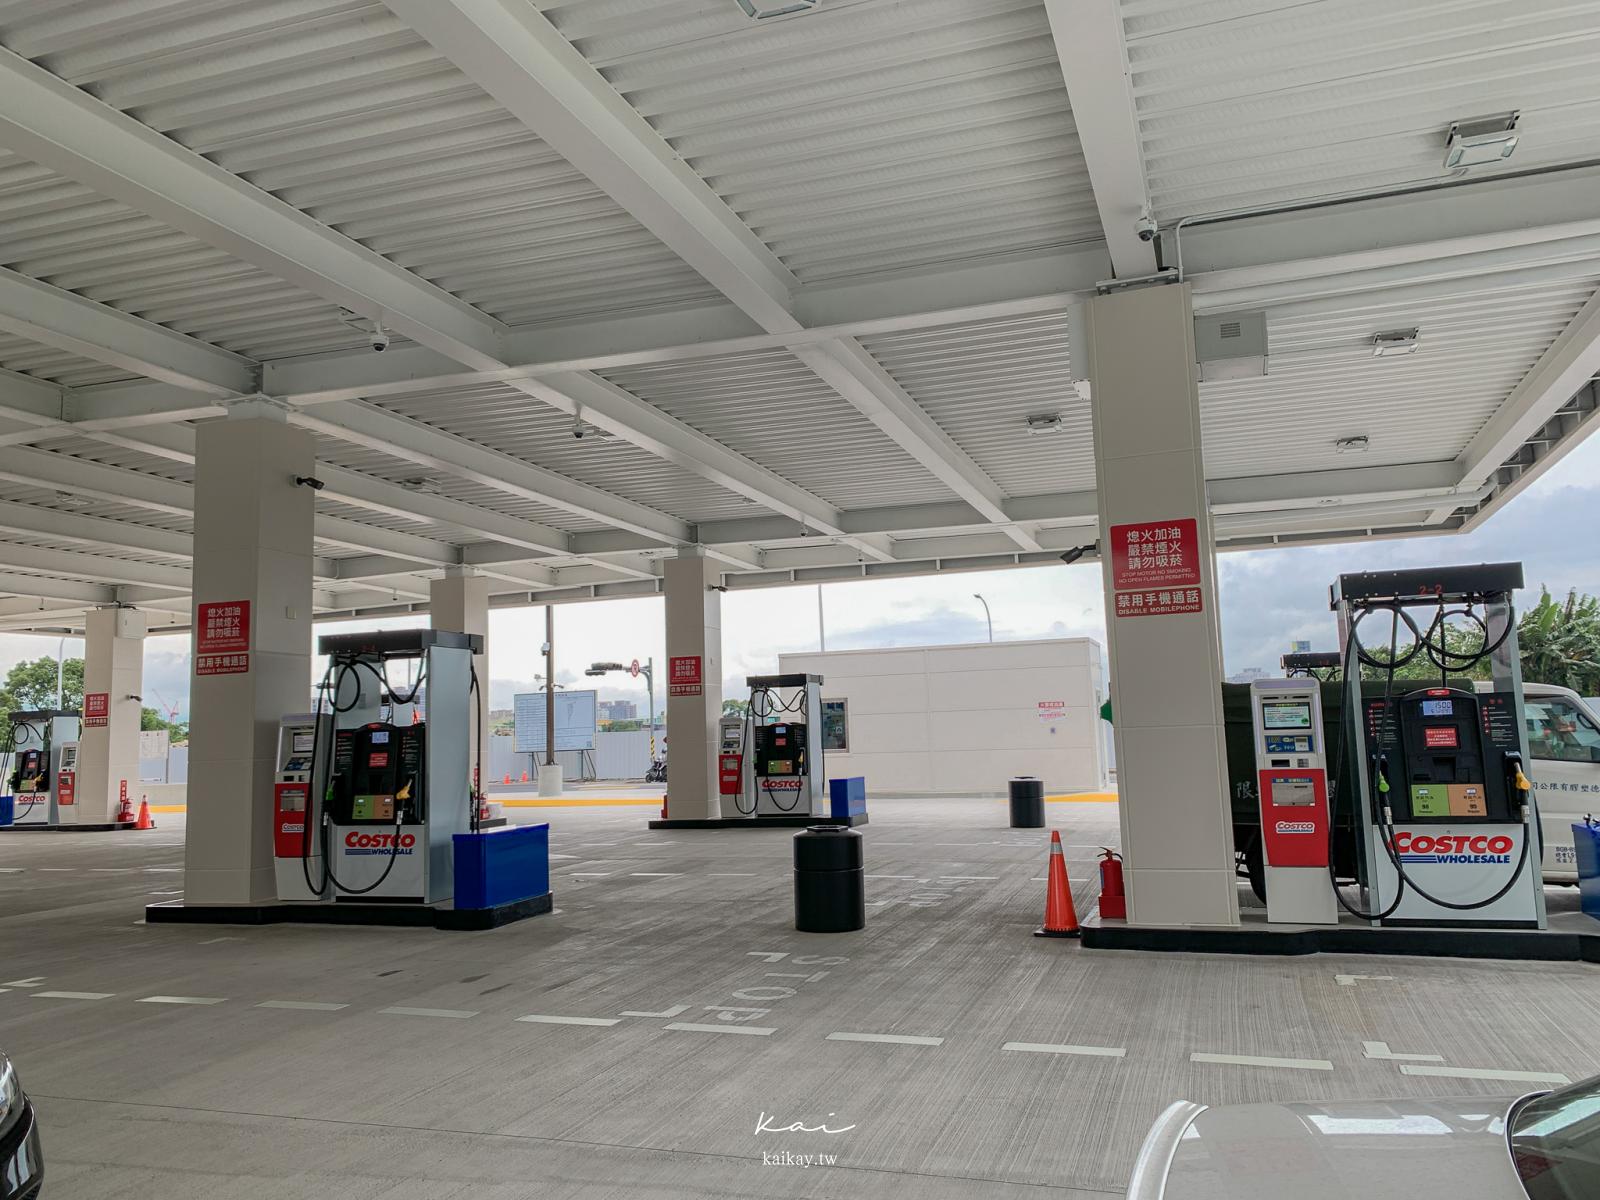 ☆【好市多】雙北第一間Costco加油站「自助加油」全攻略。每公升便宜3元超有感！